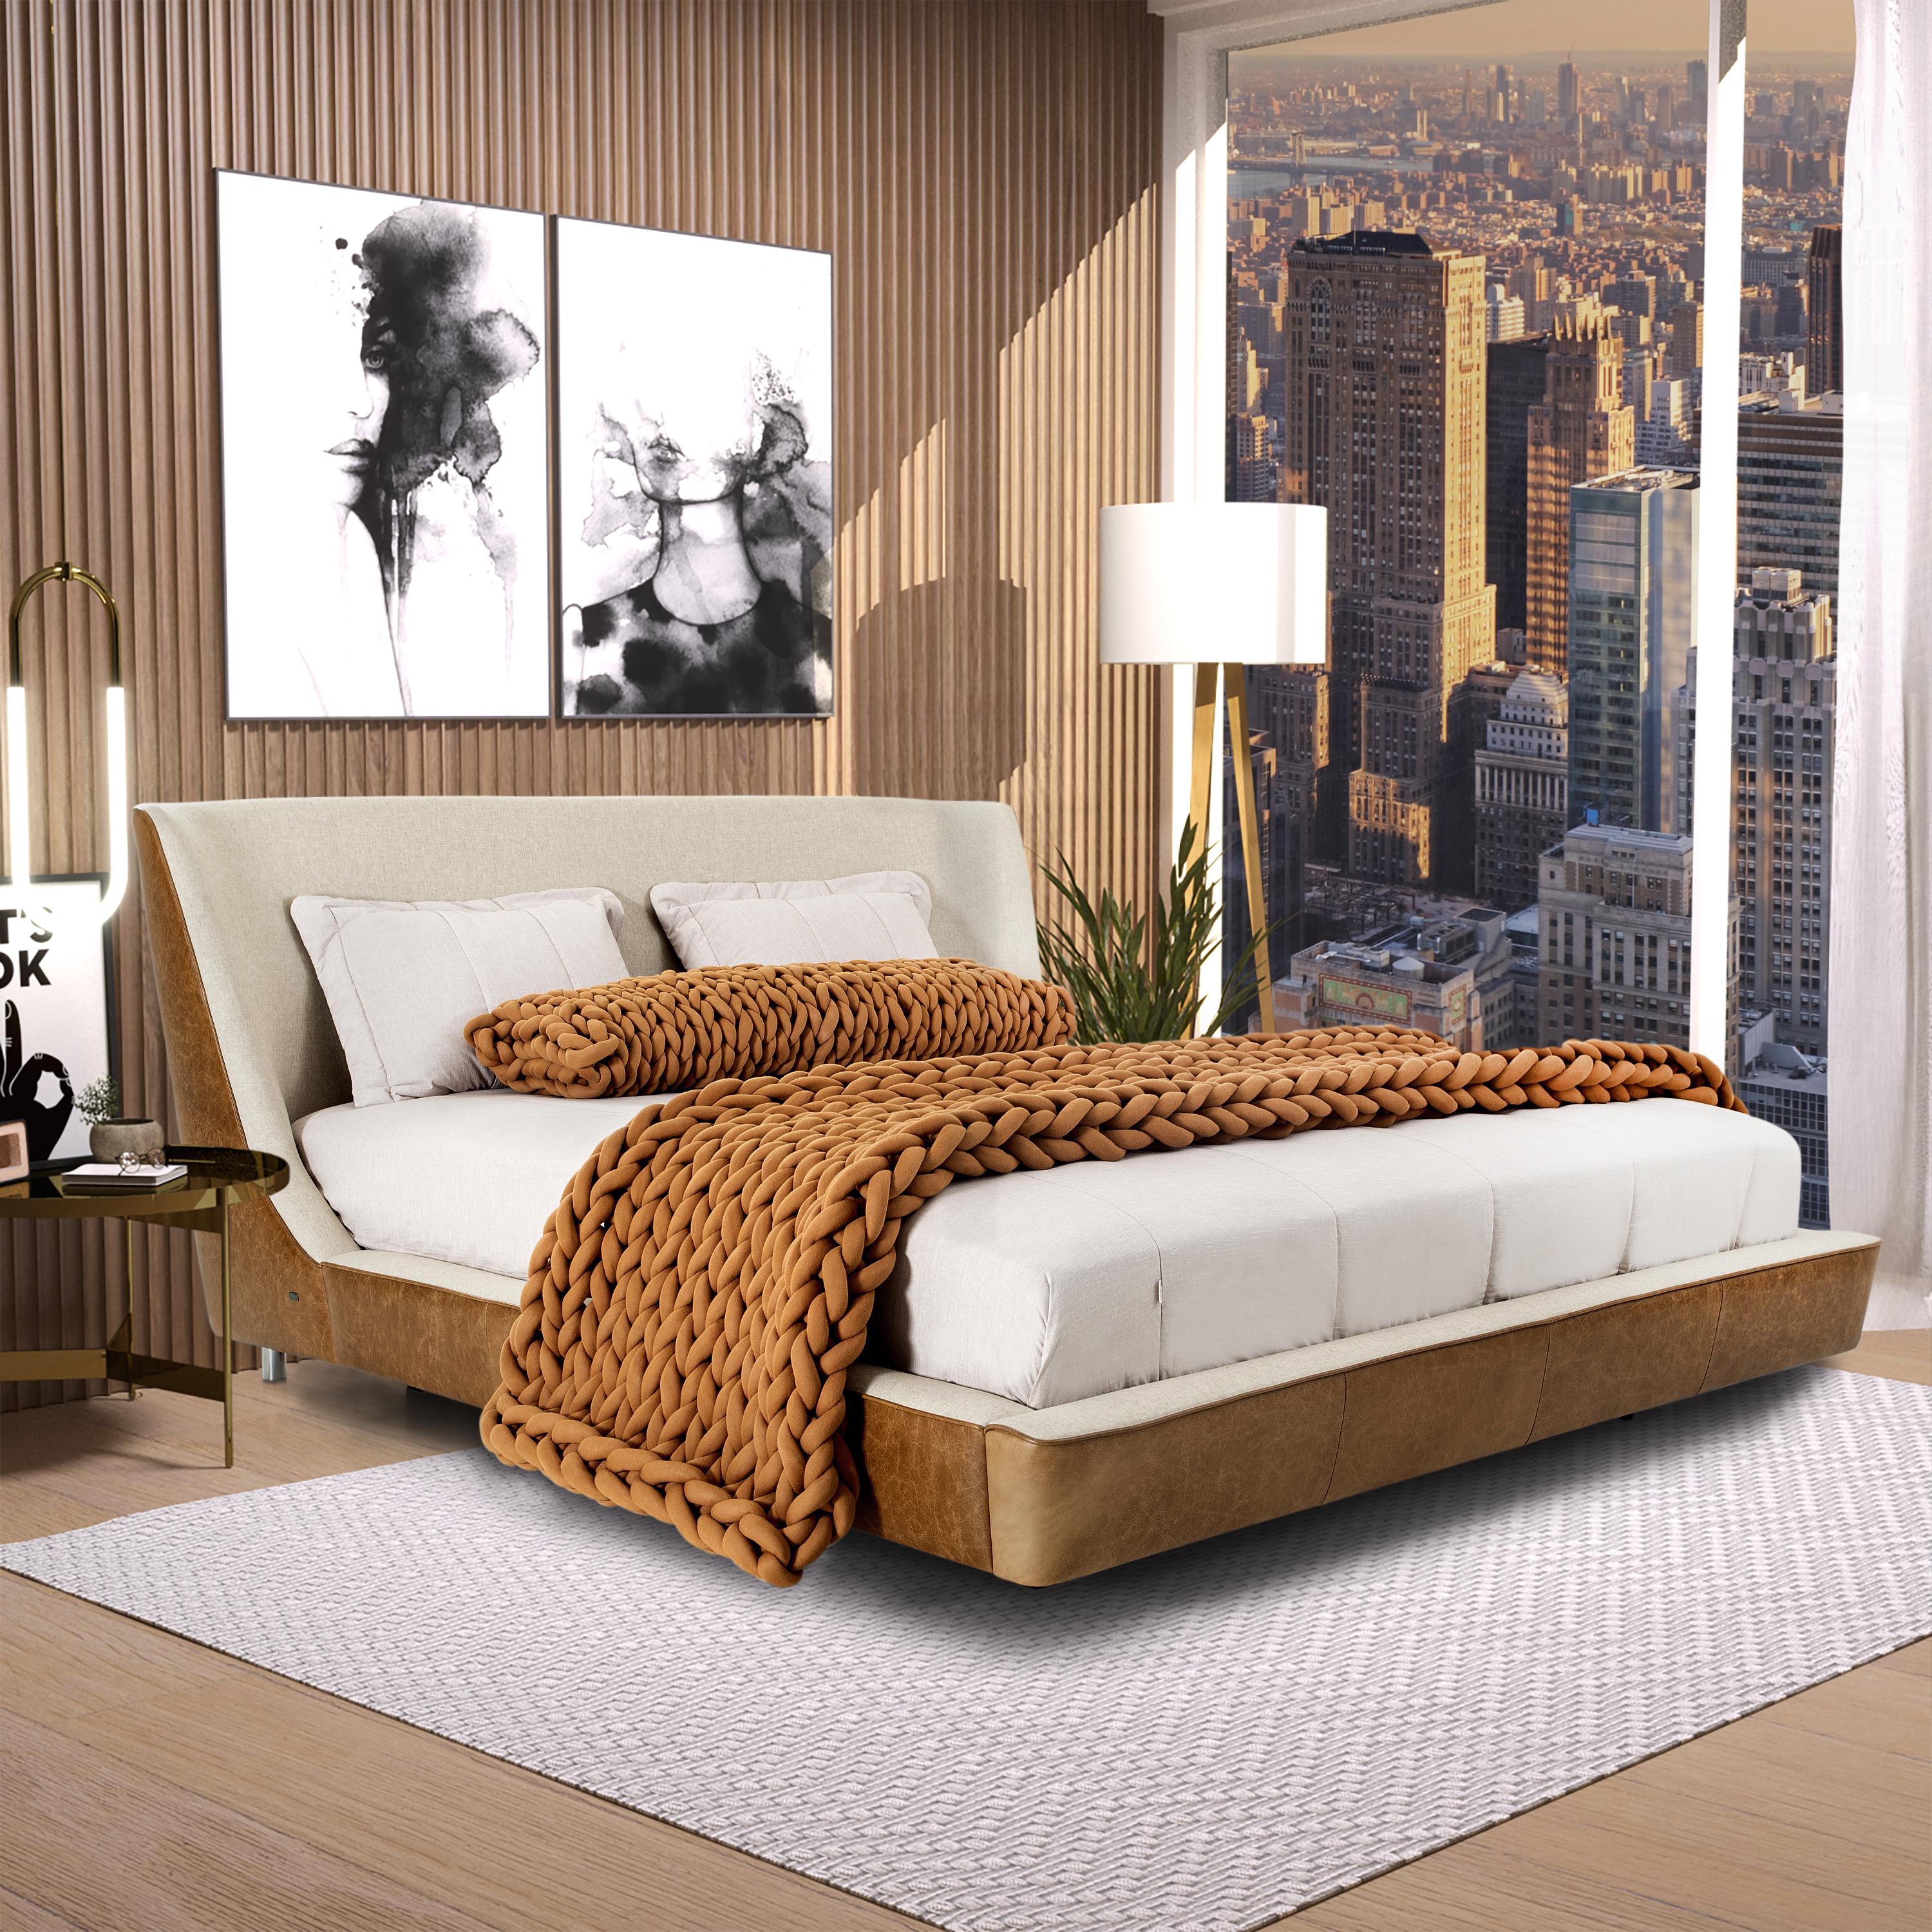 Les incroyables designers de l'équipe Uultis ont fabriqué ce magnifique lit queen Musa dans une combinaison exquise de tissu avoine et de cuir marron, avec une forme de coquille en guise de tête de lit qui est soutenue par un cadre angulaire,